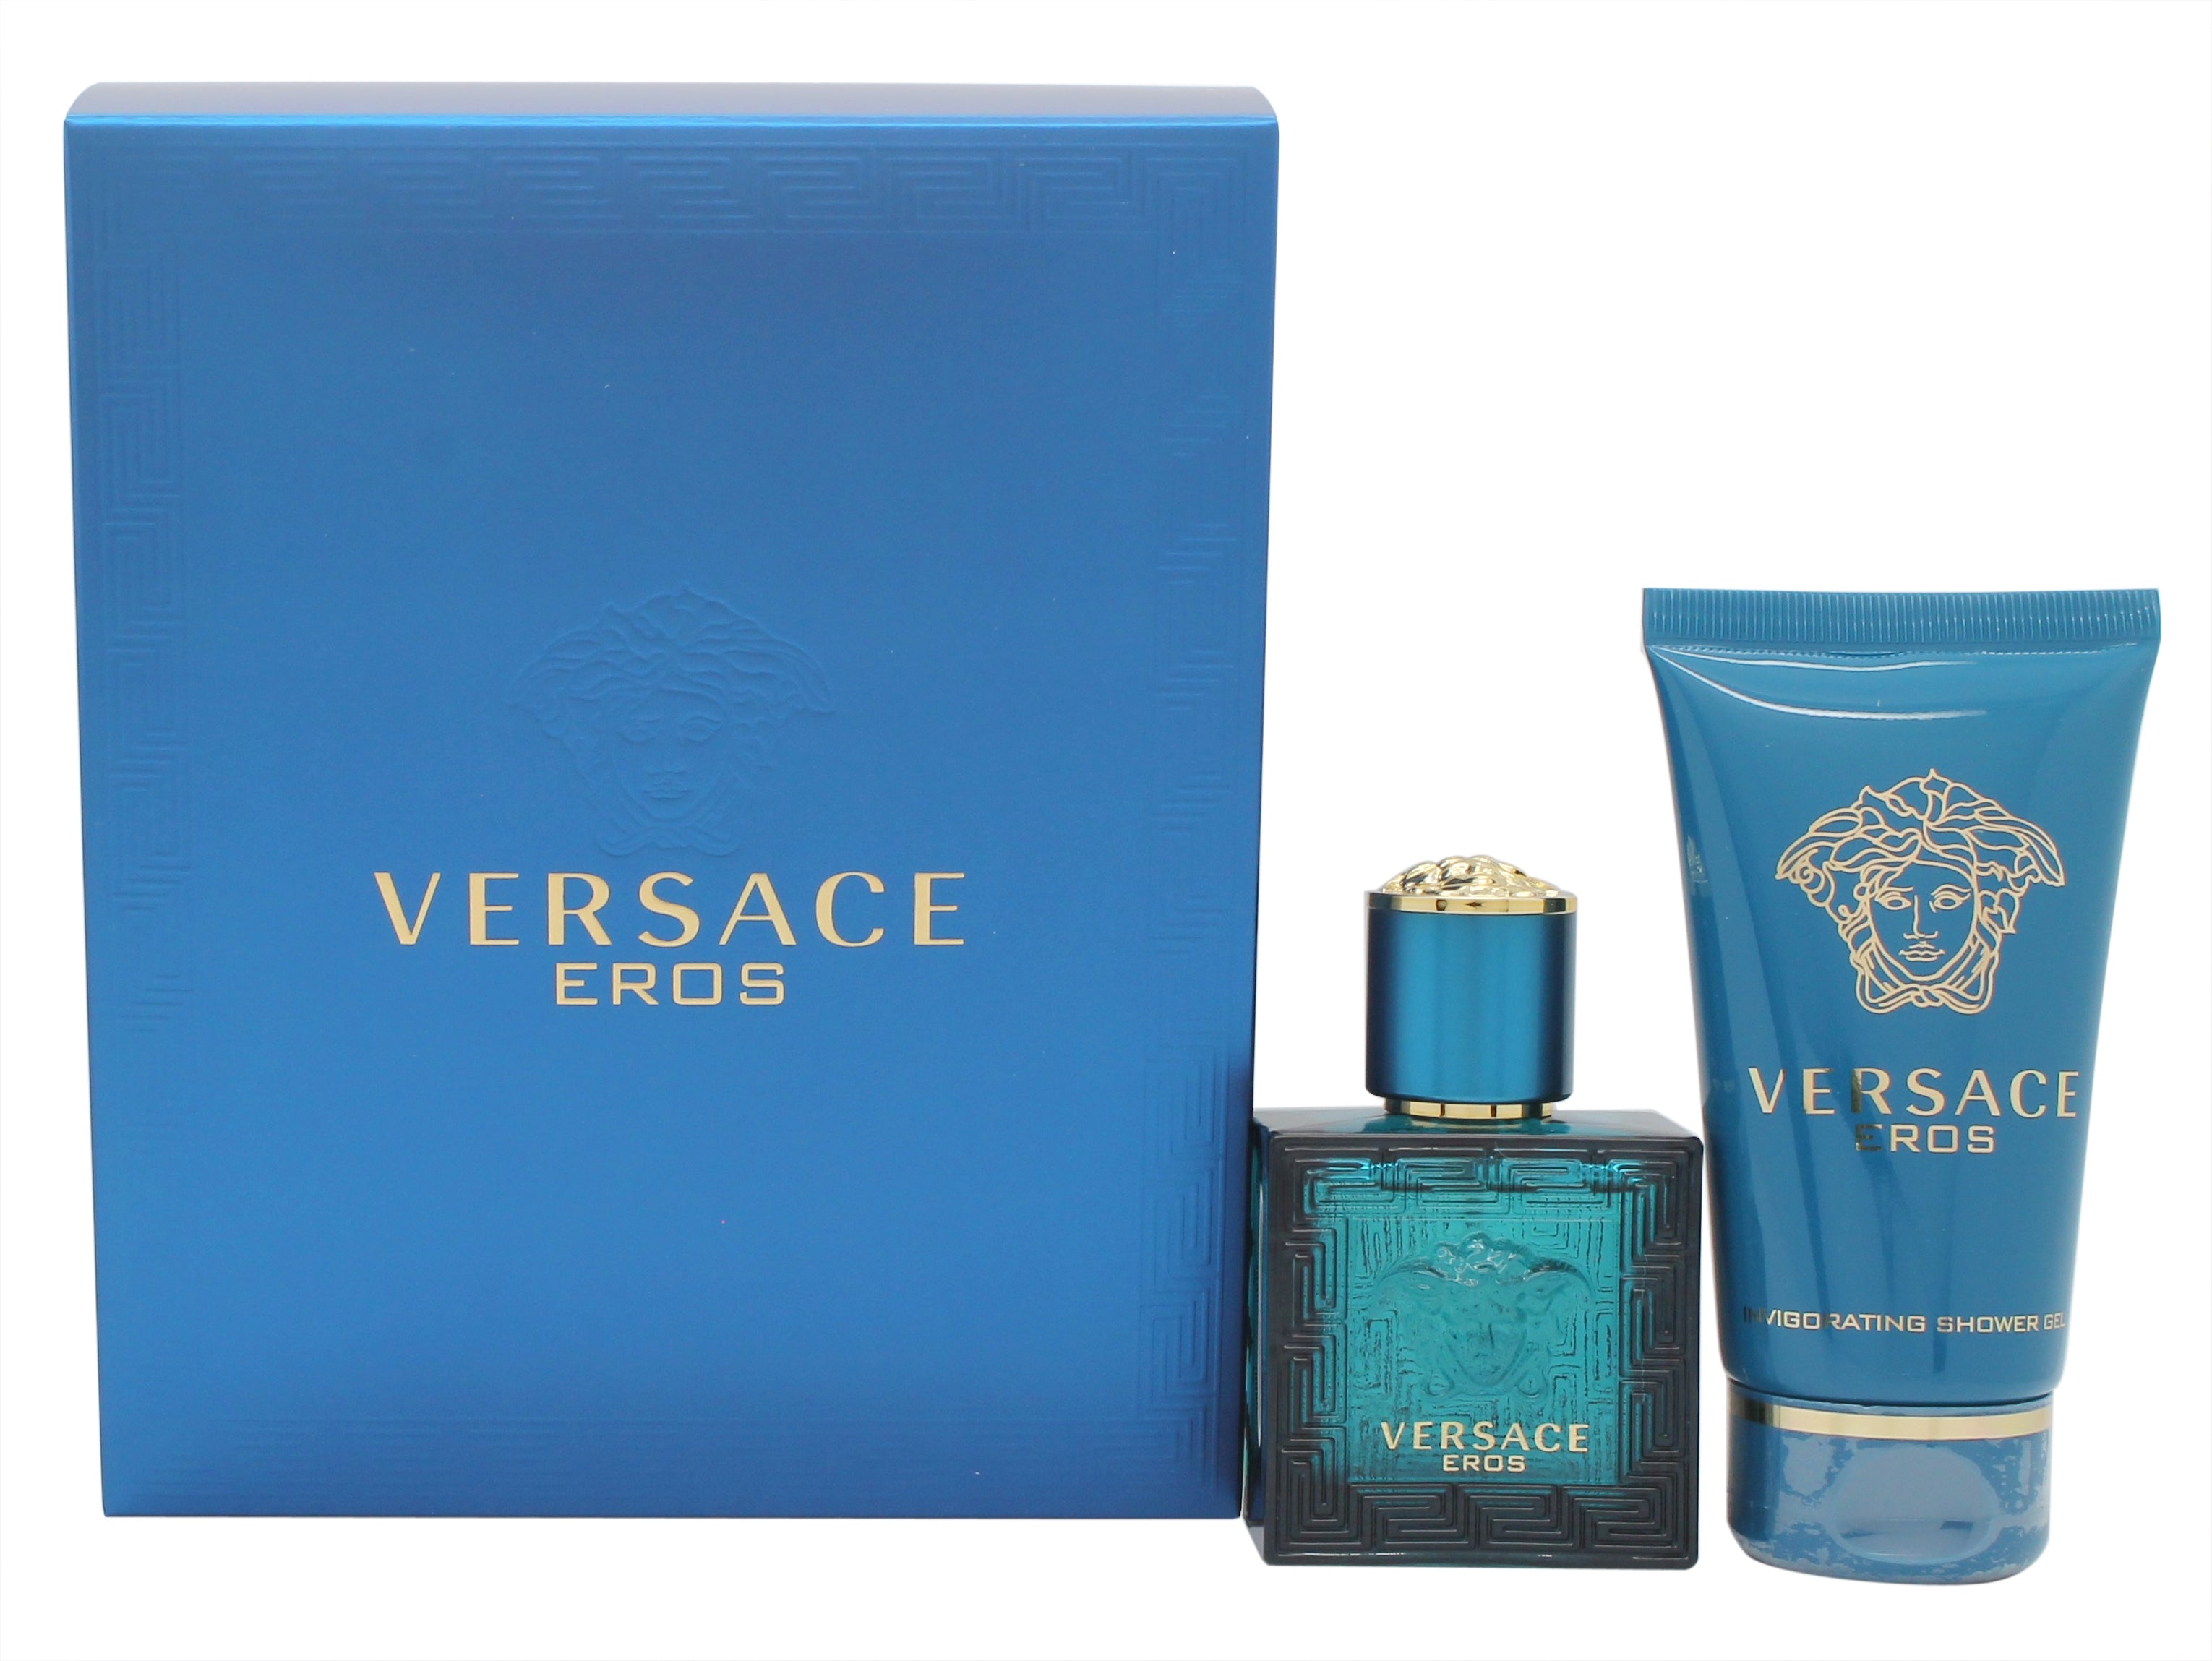 View Versace Eros Gift Set 30ml EDT 50ml Shower Gel information